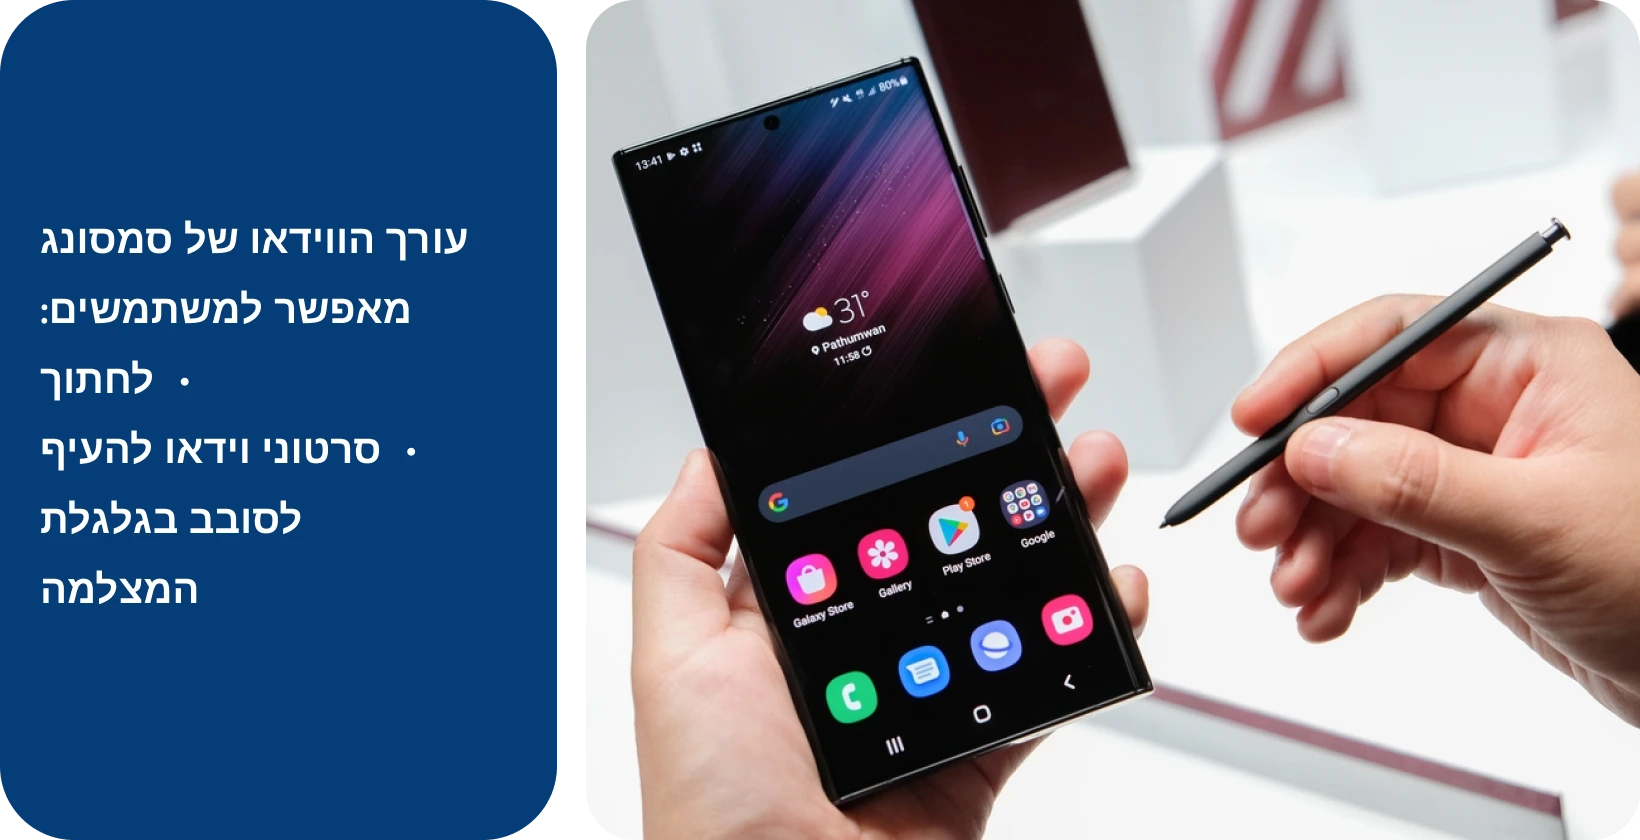 אחיזת יד במכשיר Samsung Note עם ה-S Pen, מוכן לעריכה והוספה של טקסט לסרטון על המסך.